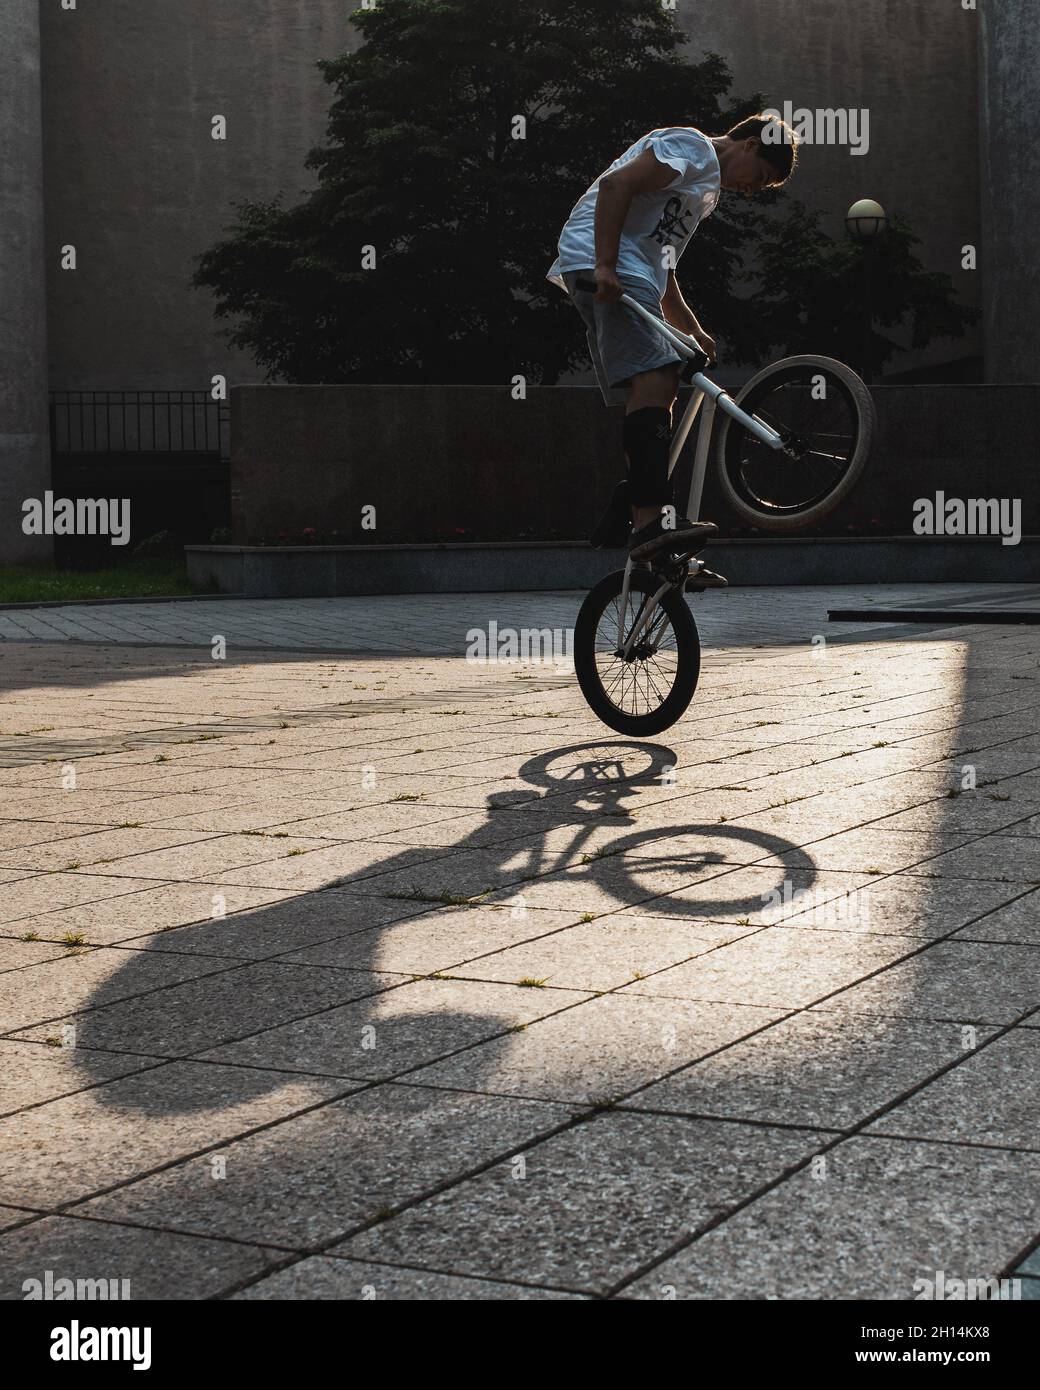 Silhouette di un giovane uomo in bici BMX contro il tramonto. BMX rider fare trucchi in aria su una bicicletta. Stile libero BMX. Concetto di stile di vita sano. Foto Stock